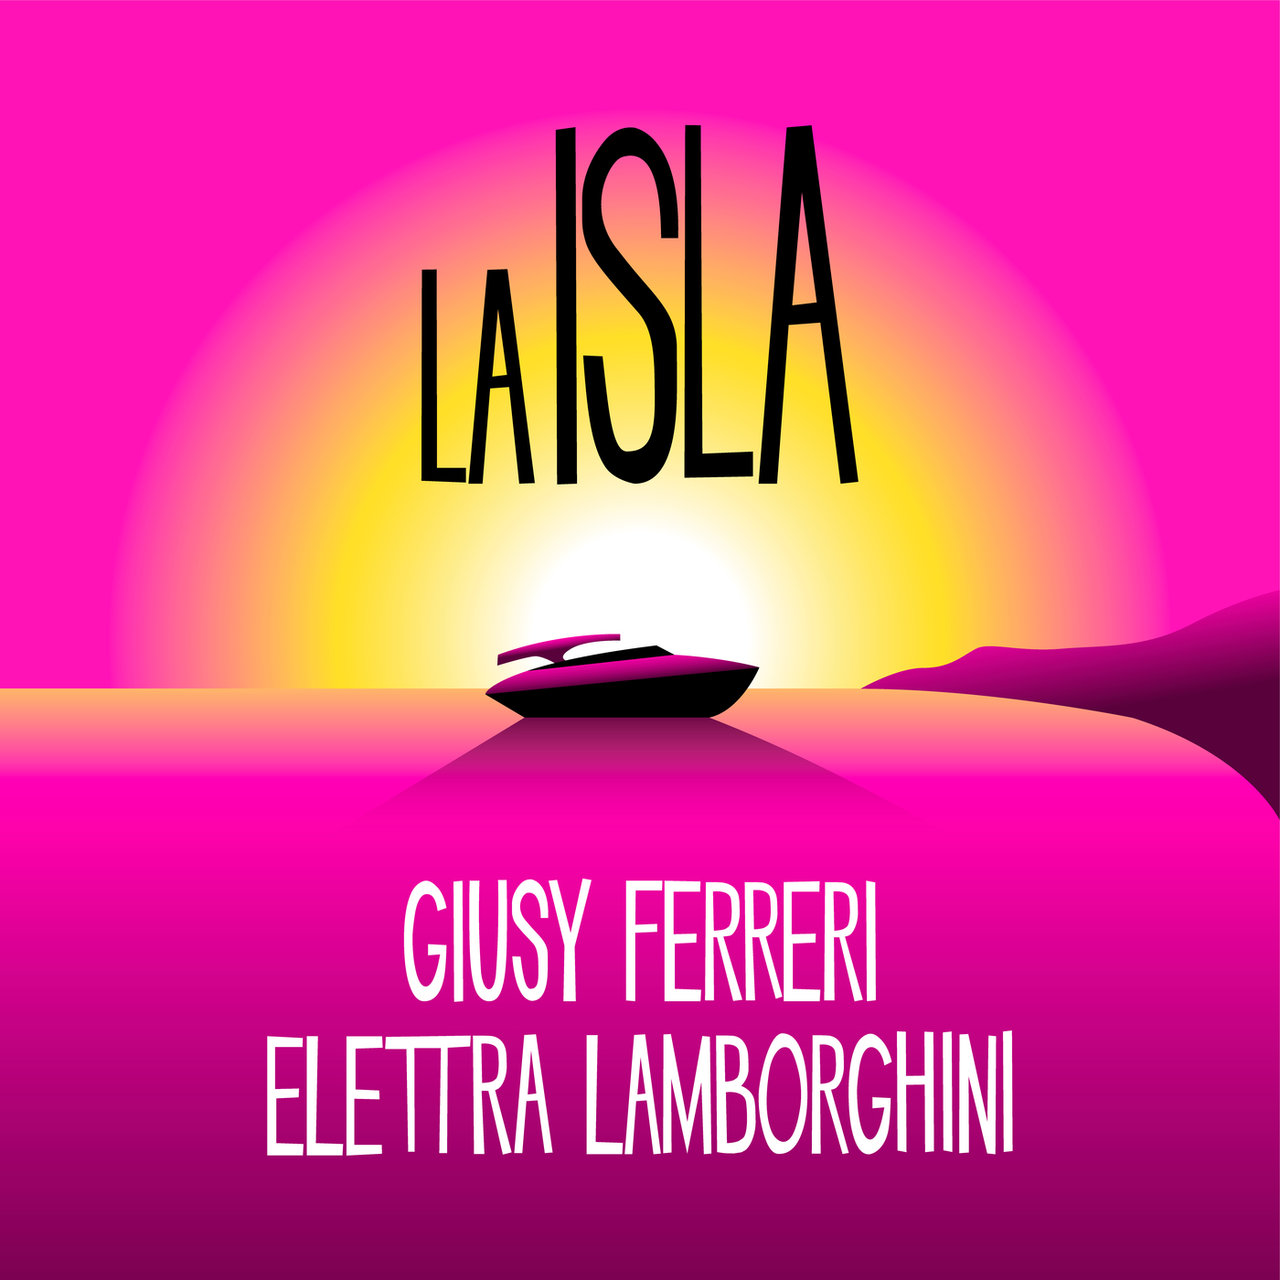 Giusy Ferreri & Elettra Lamborghini — LA ISLA cover artwork